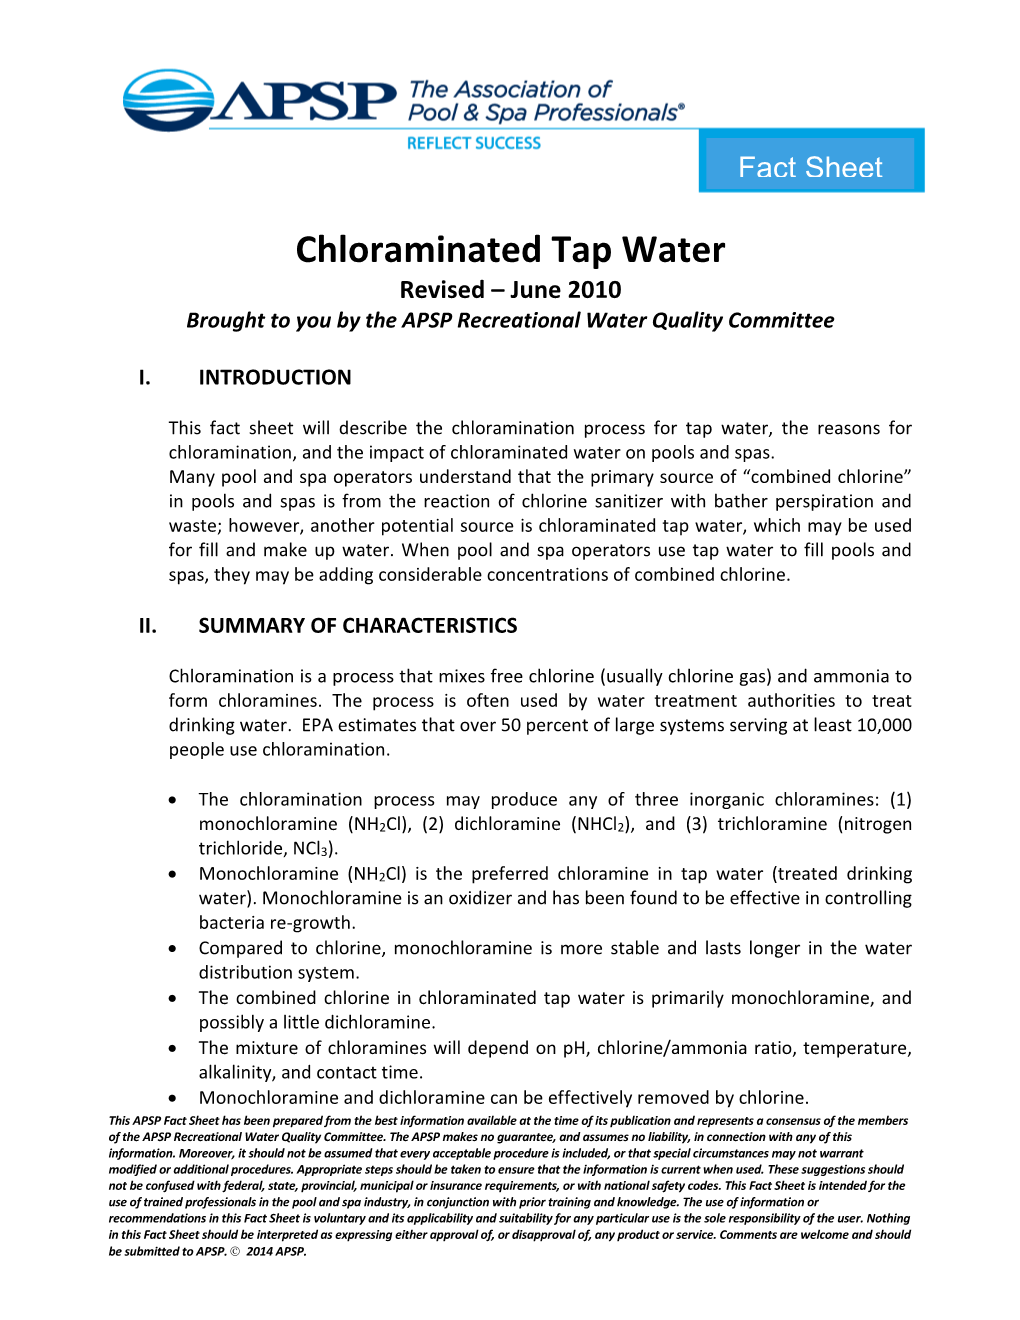 APSP Chloraminated Tap Water Fact Sheet